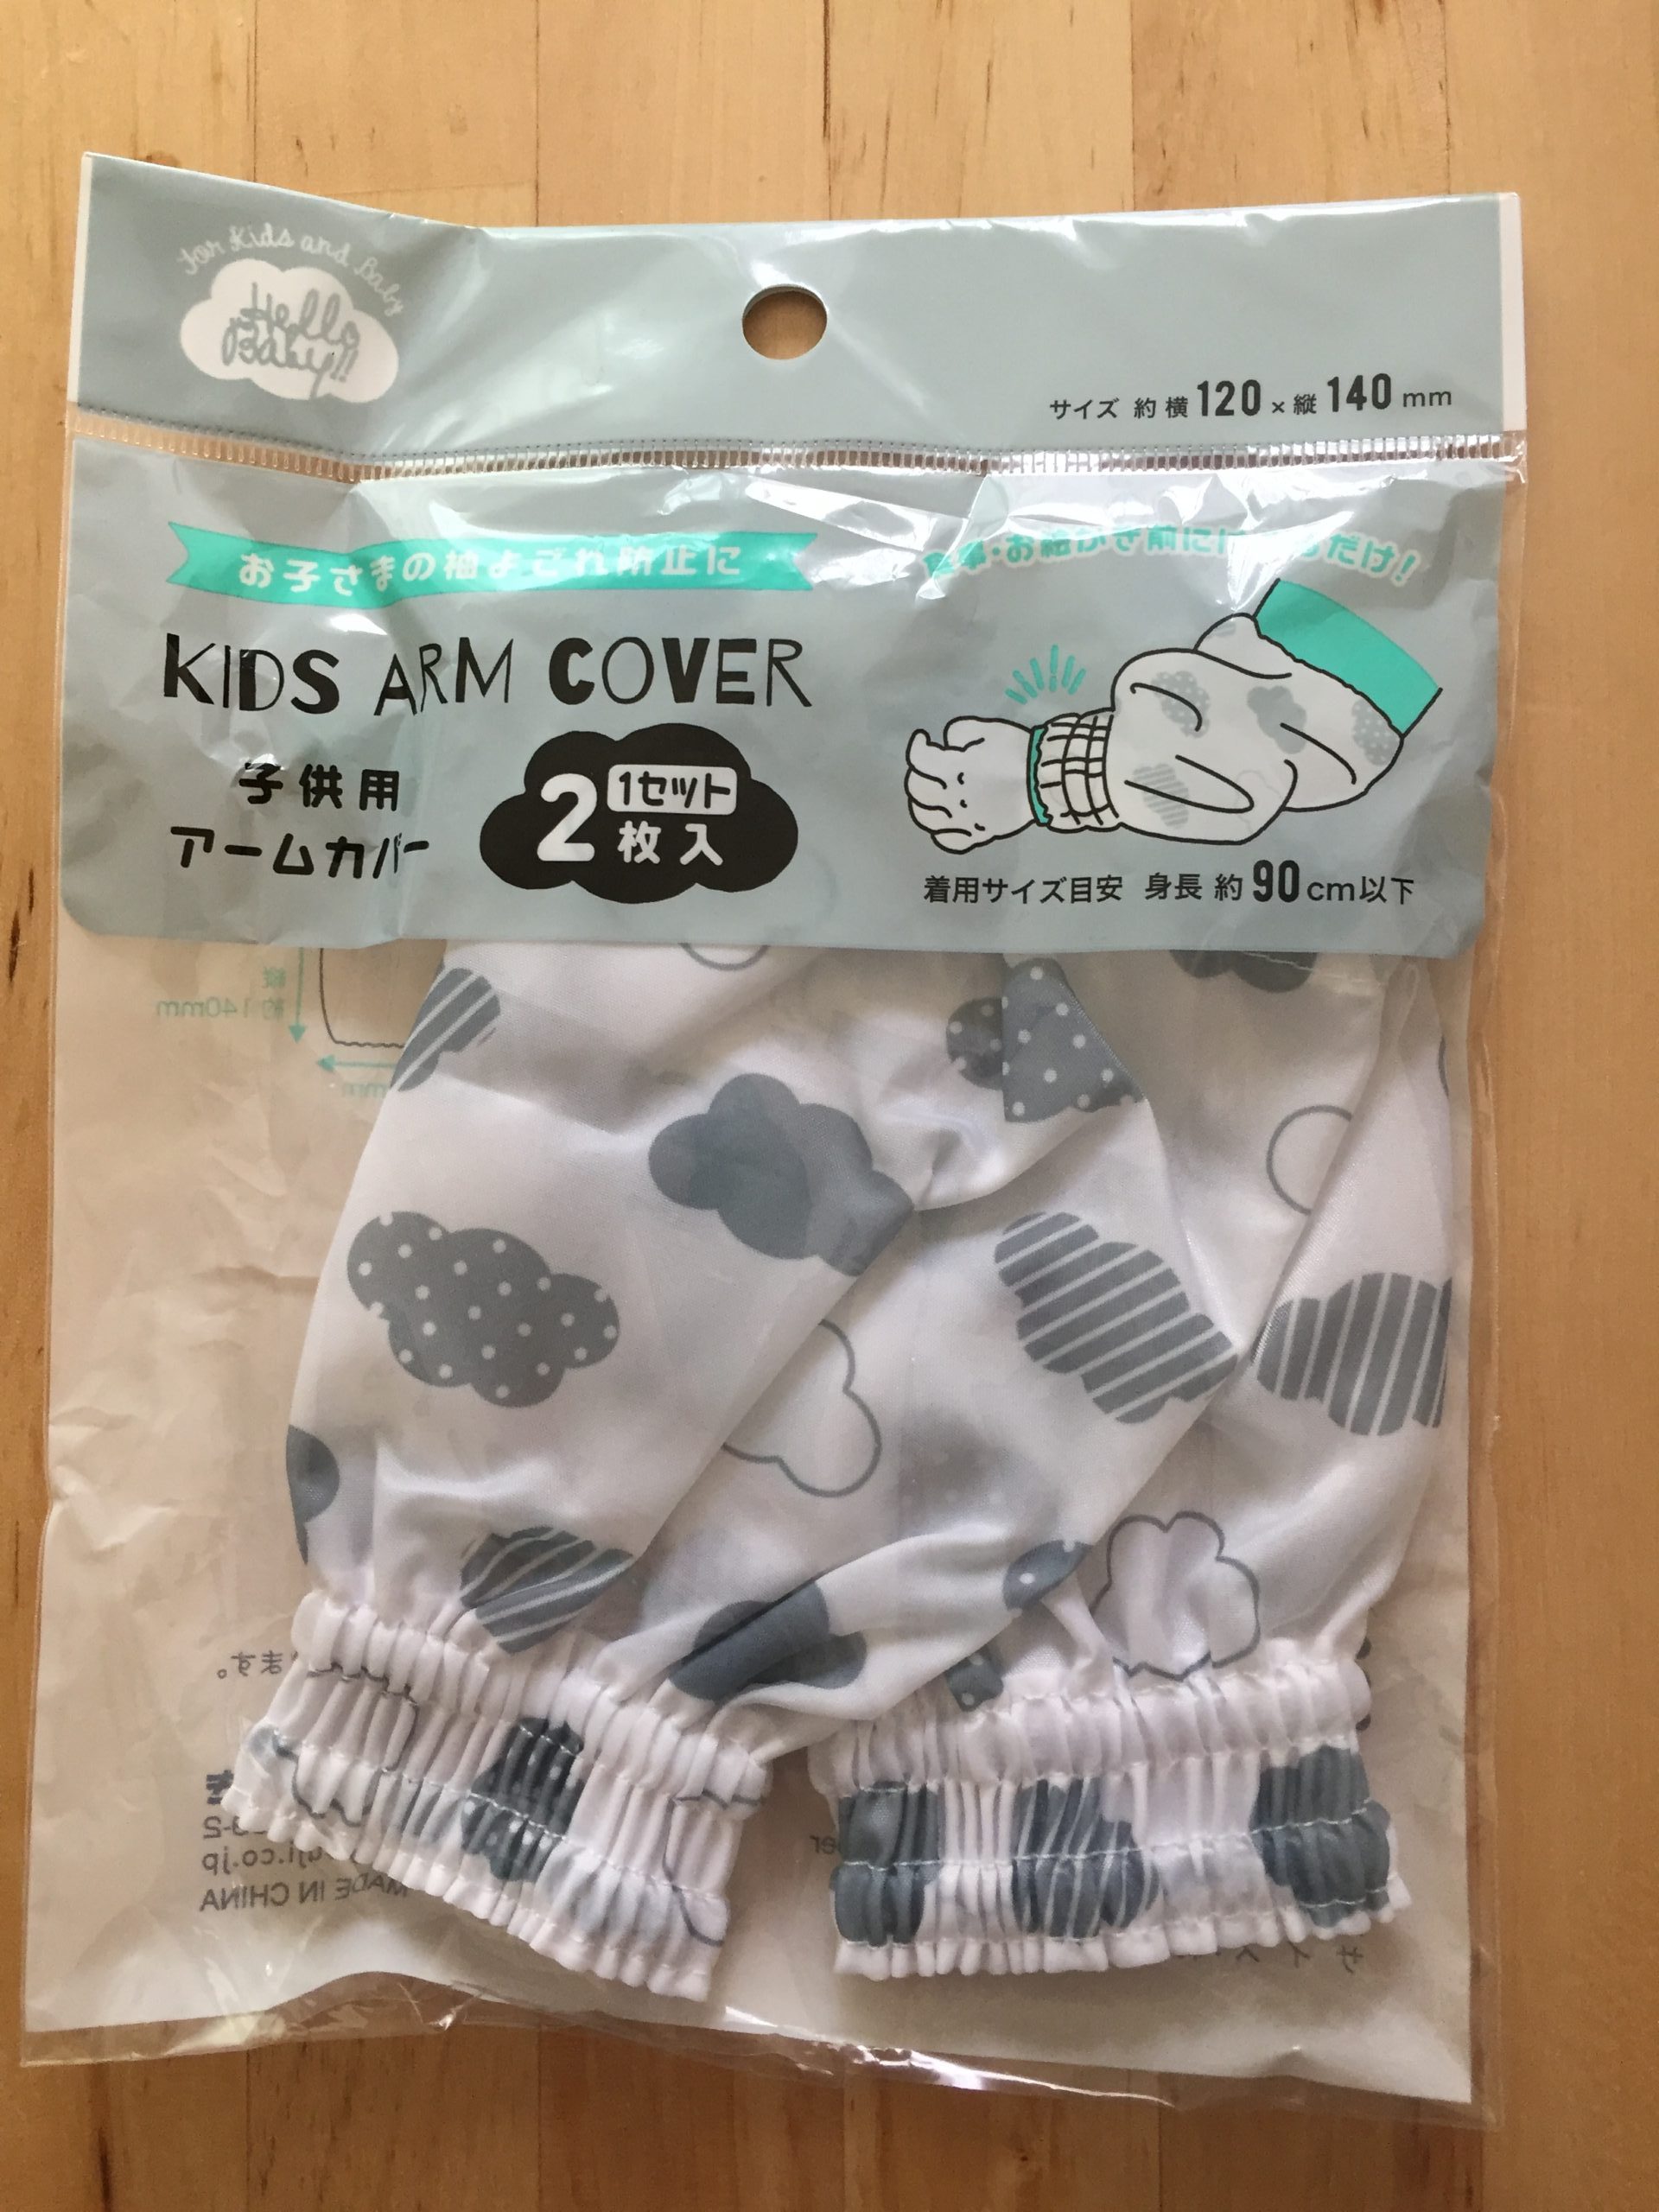 キャンドゥで赤ちゃん用のアームカバーと使い捨てエプロン買ってみた！ | 情報発信ブログサイト Blue Rose